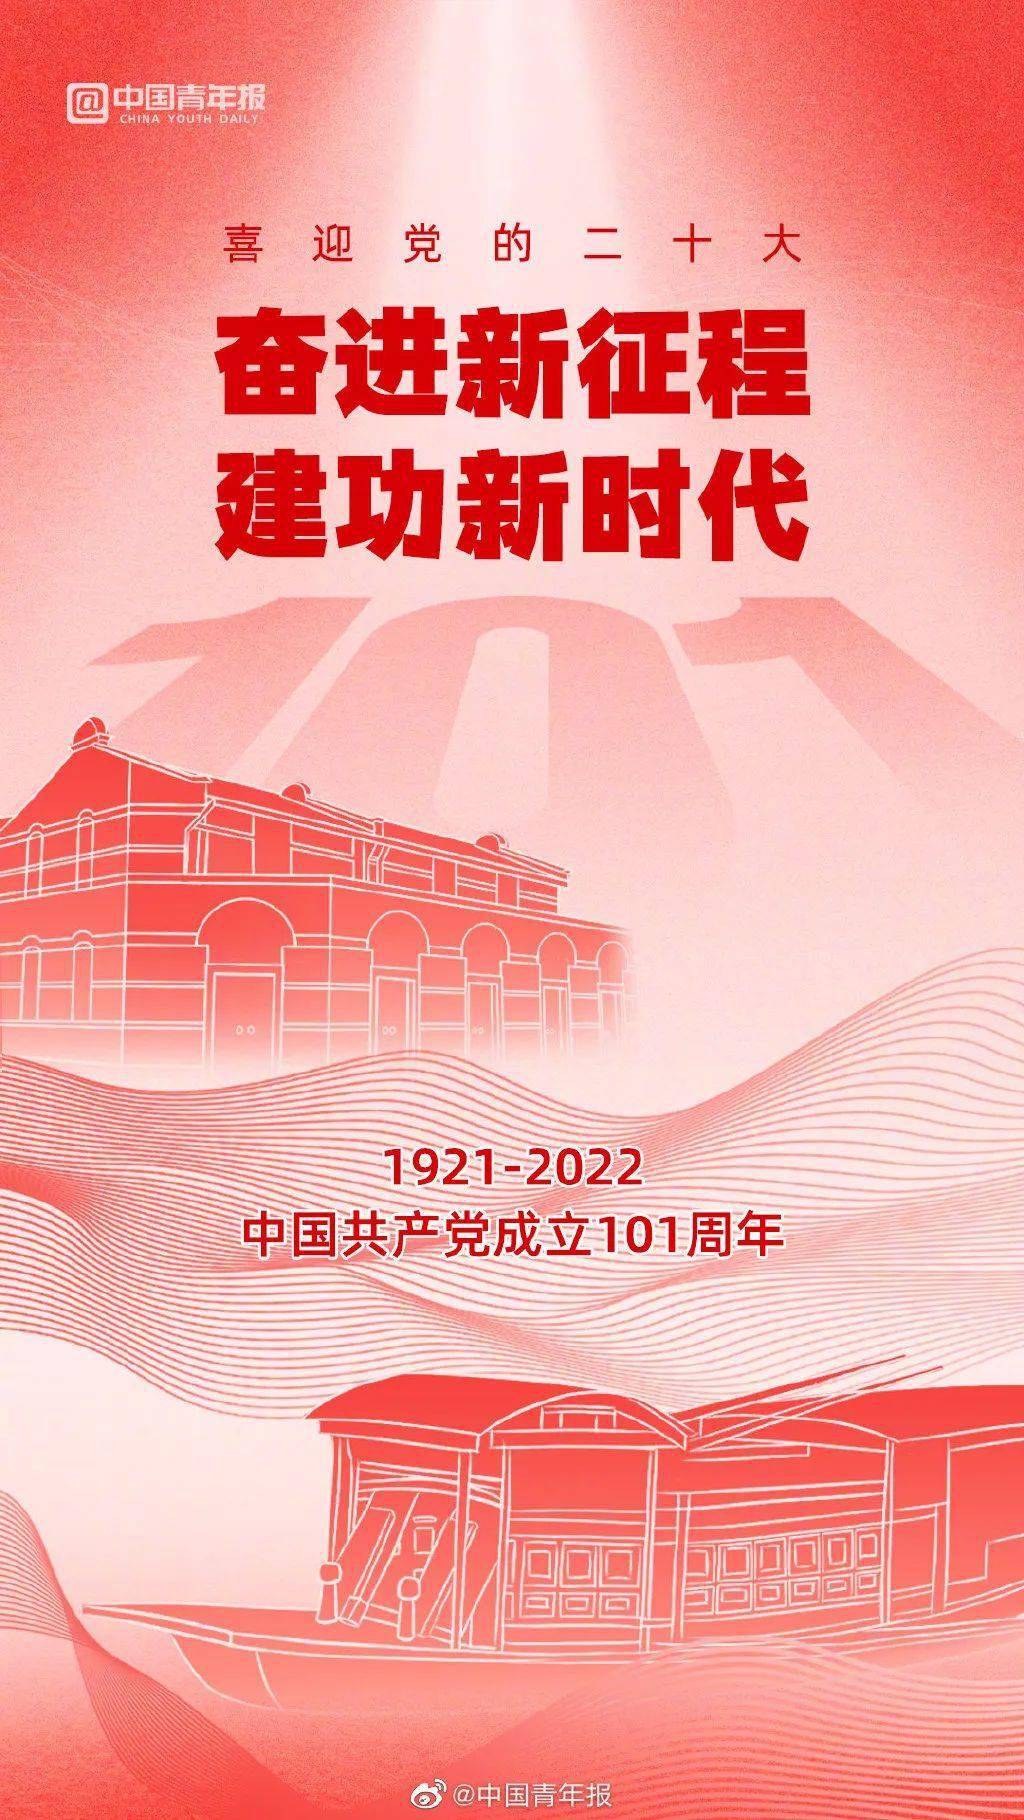 香港回归25周年、建党101周年 那些设计中不变的中国元素